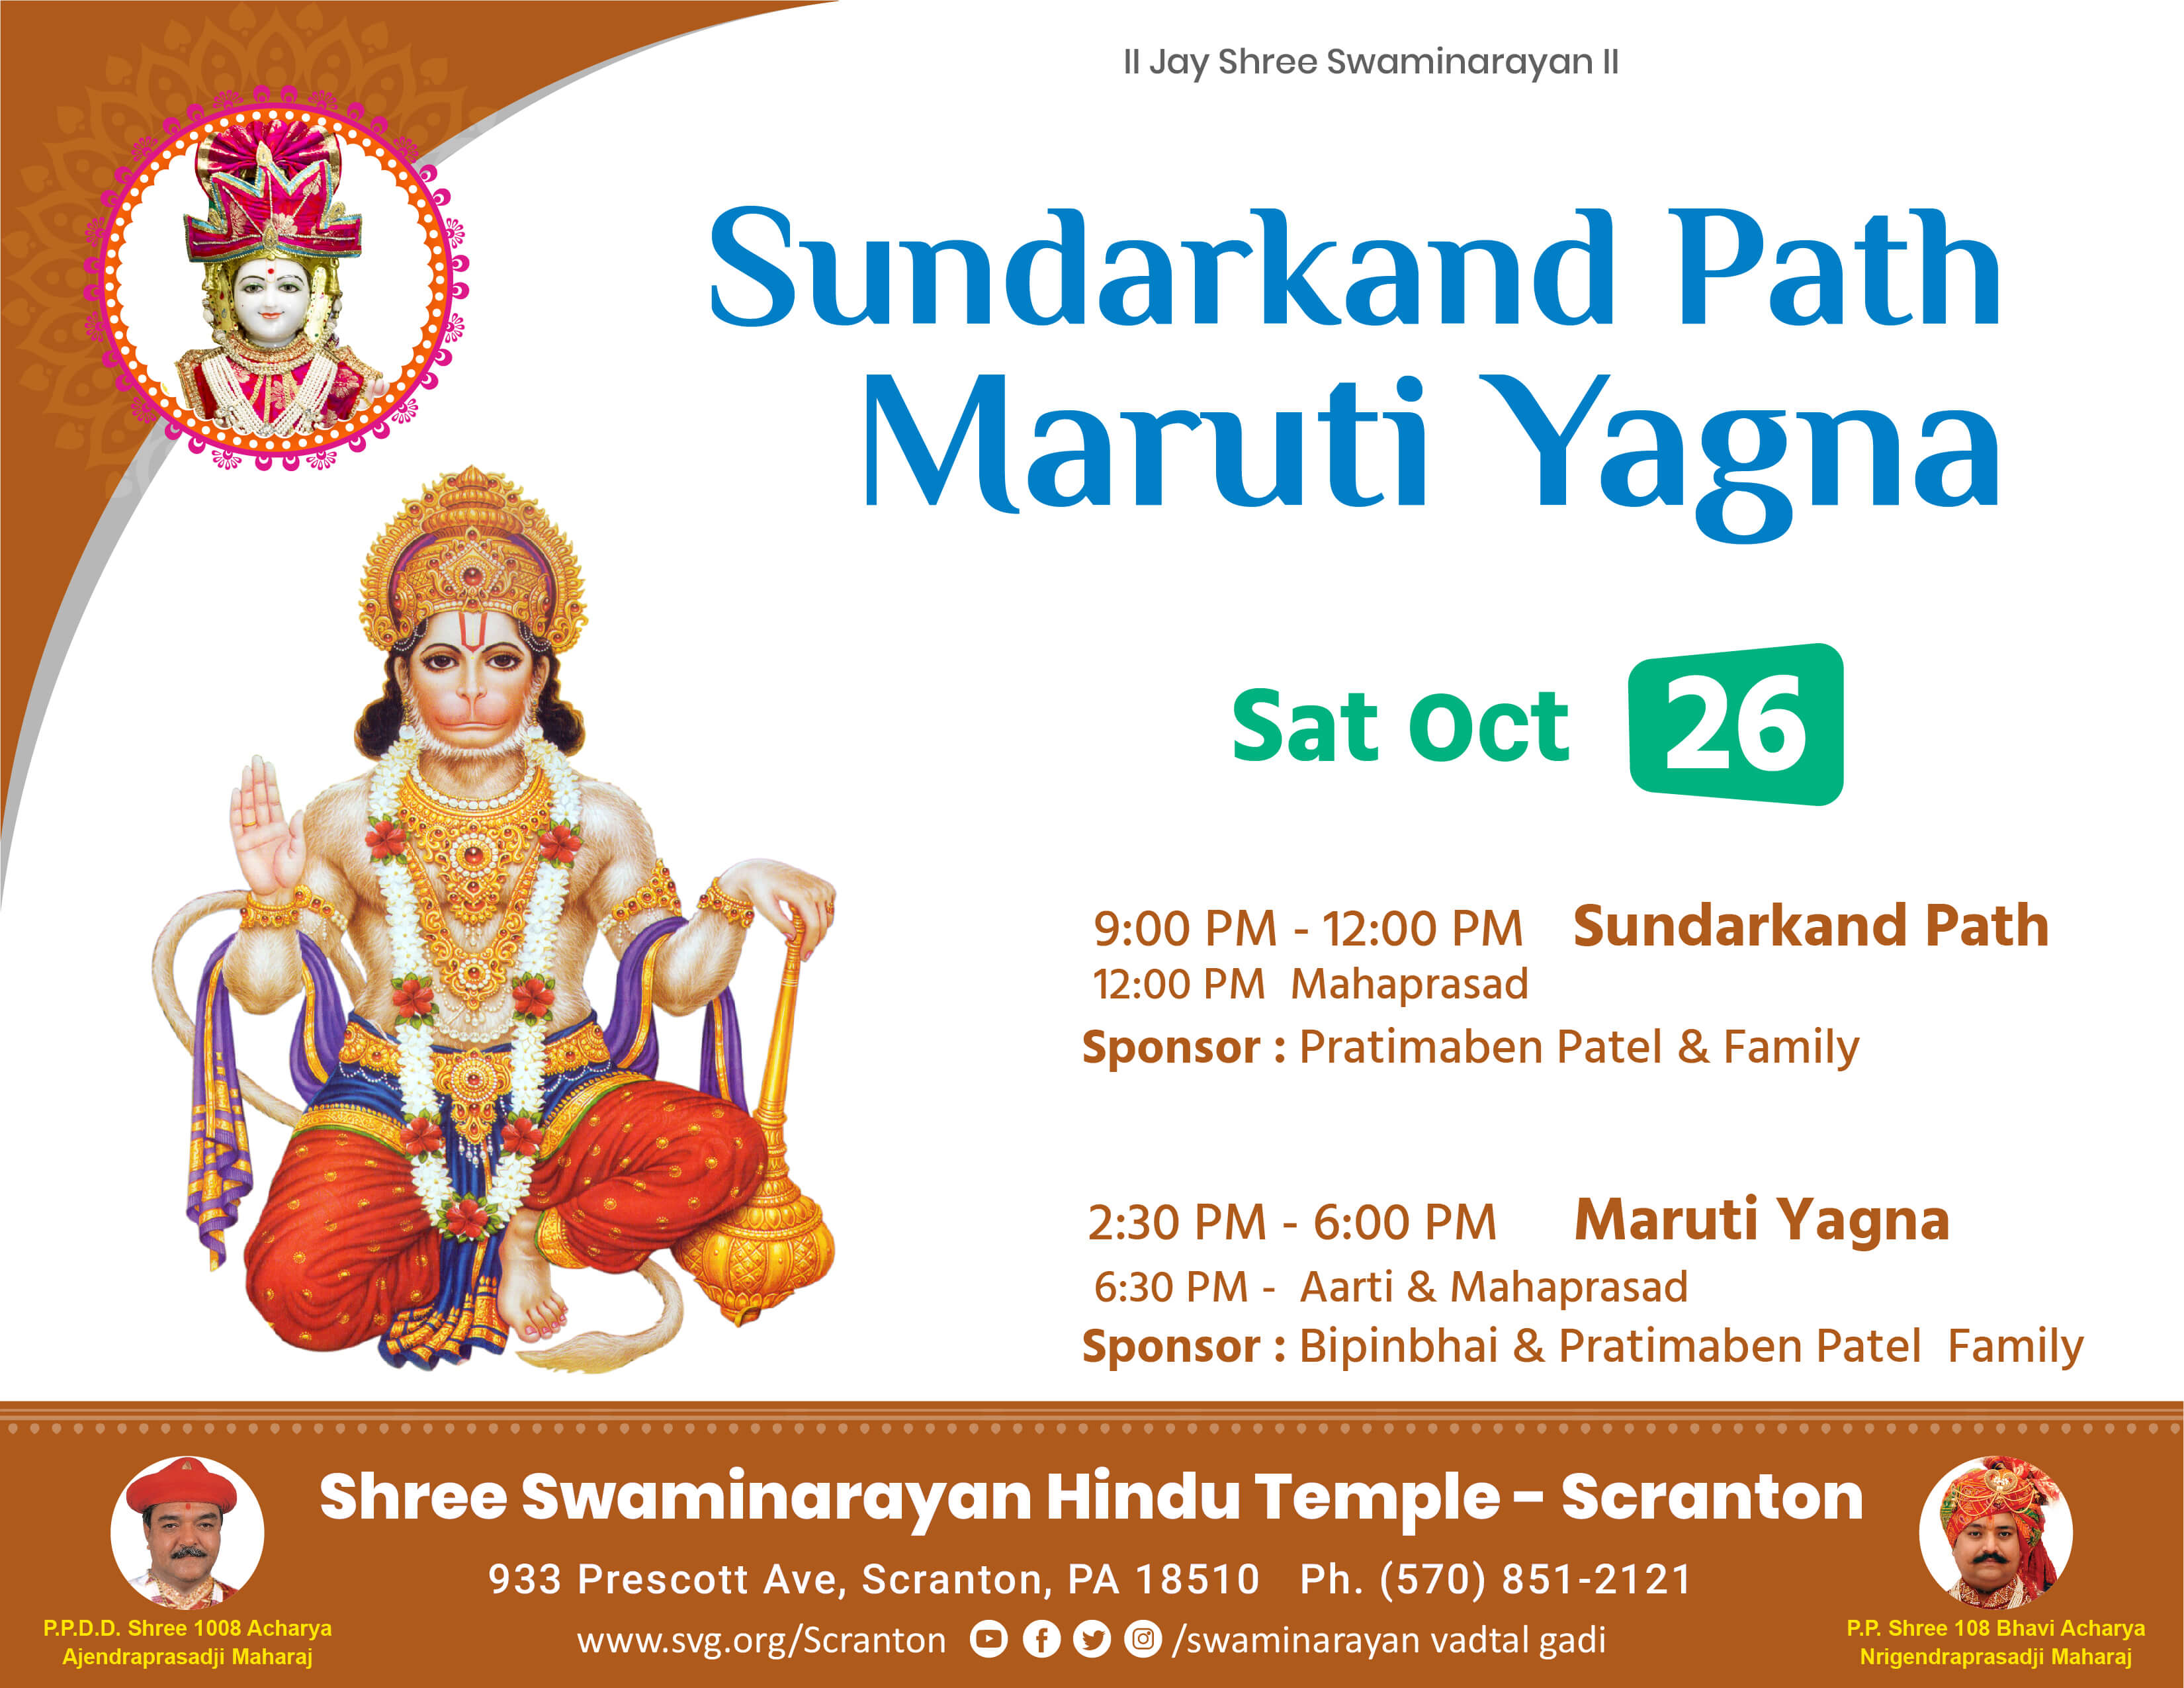 Swaminarayan Vadtal Gadi, Sundarkand-Path-Maruti-Yagba-Sat-26-Nov.jpg